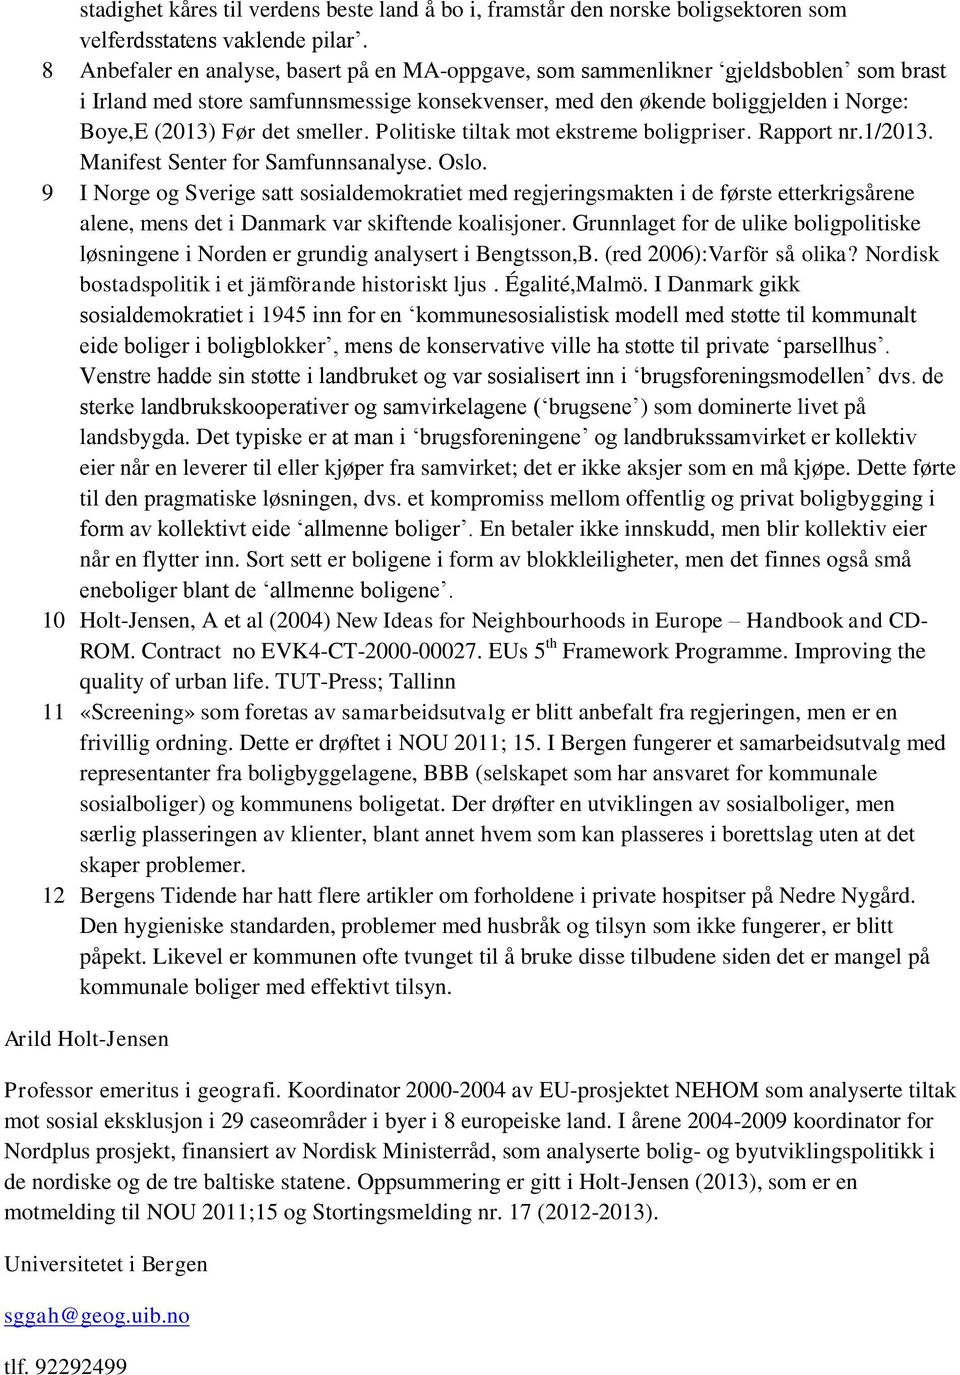 smeller. Politiske tiltak mot ekstreme boligpriser. Rapport nr.1/2013. Manifest Senter for Samfunnsanalyse. Oslo.